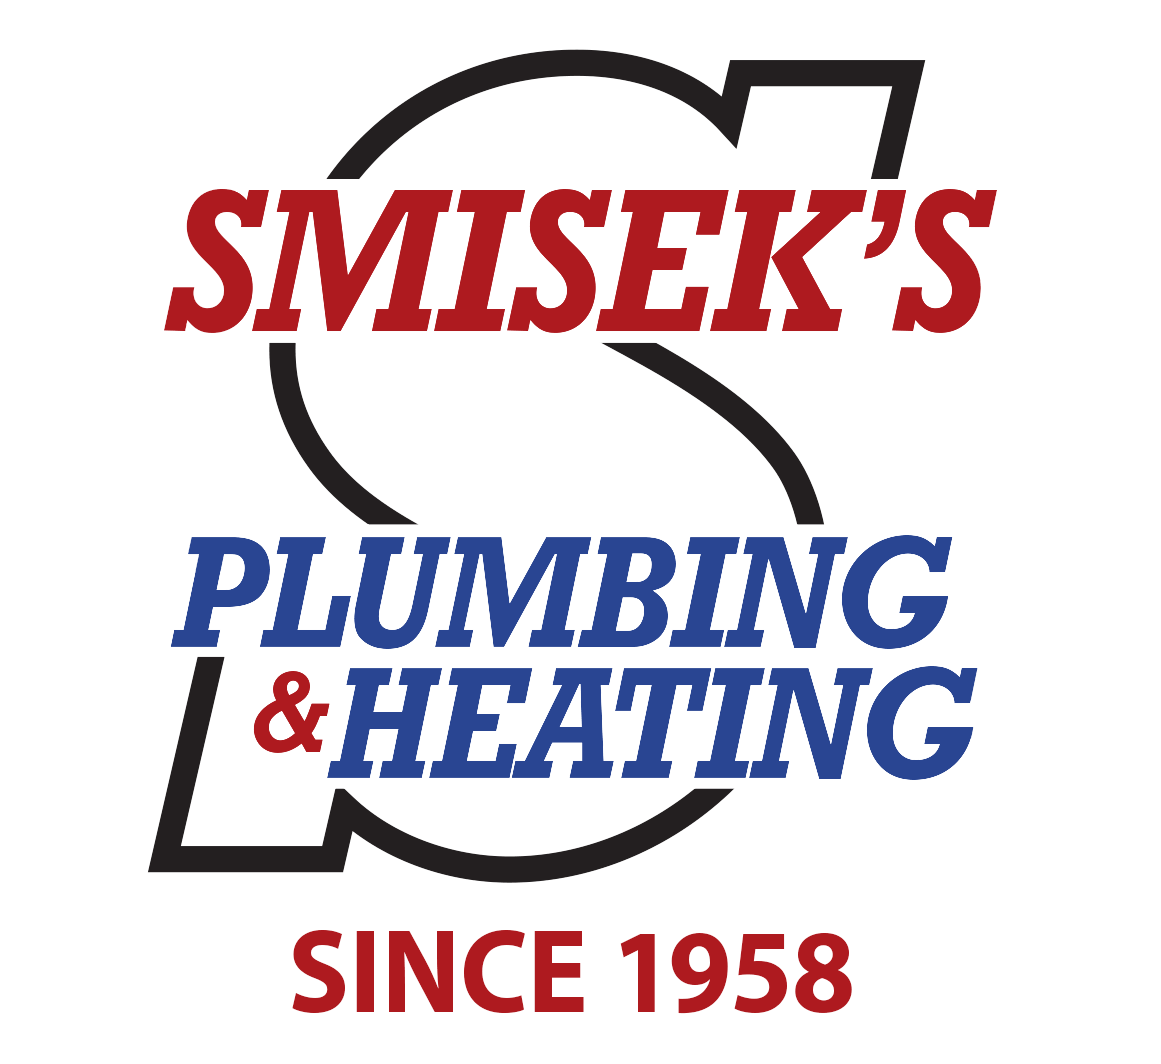 Smisek's Plumbing Heating